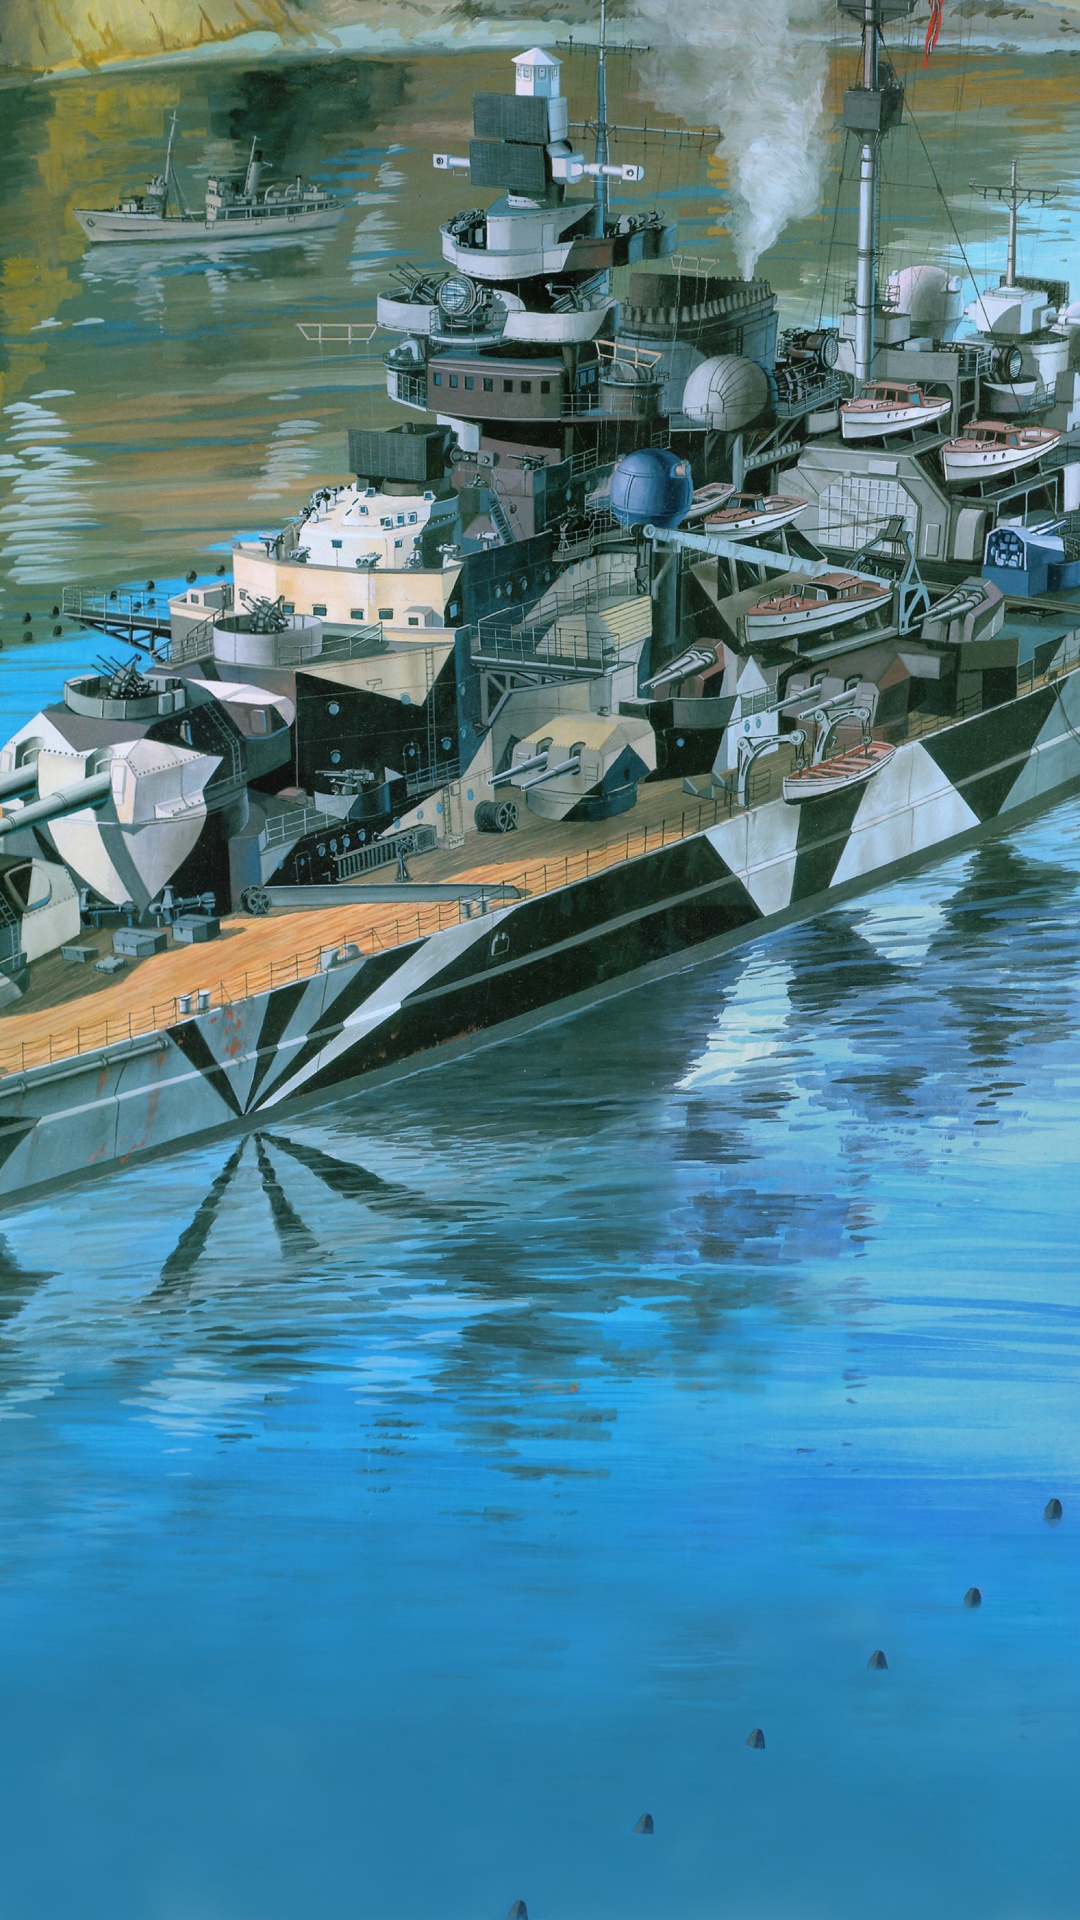 Acorazado Alemán Tirpitz, Revell, el Modelo de Plástico, Acorazado Alemán Bismarck, Barco. Wallpaper in 1080x1920 Resolution